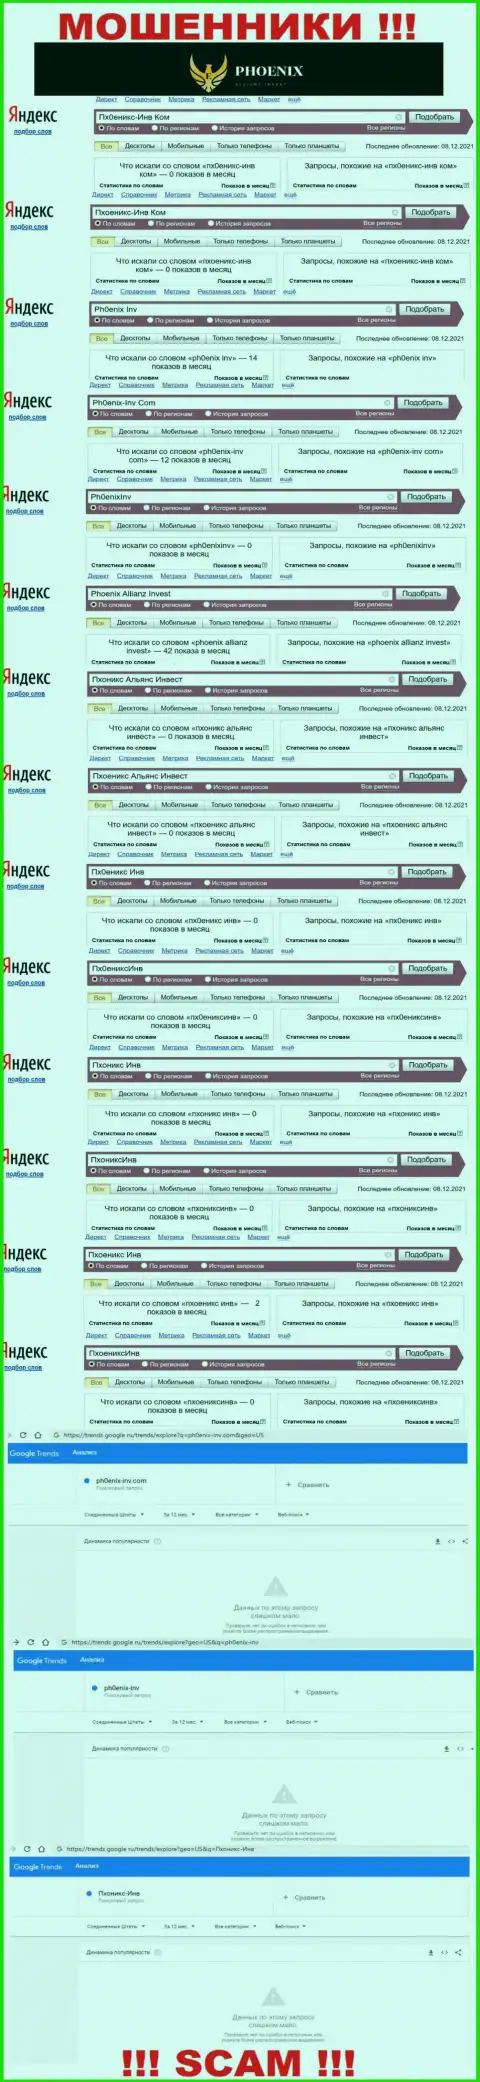 Скриншот результатов запросов по мошеннической конторе Пхоникс-Инв Ком